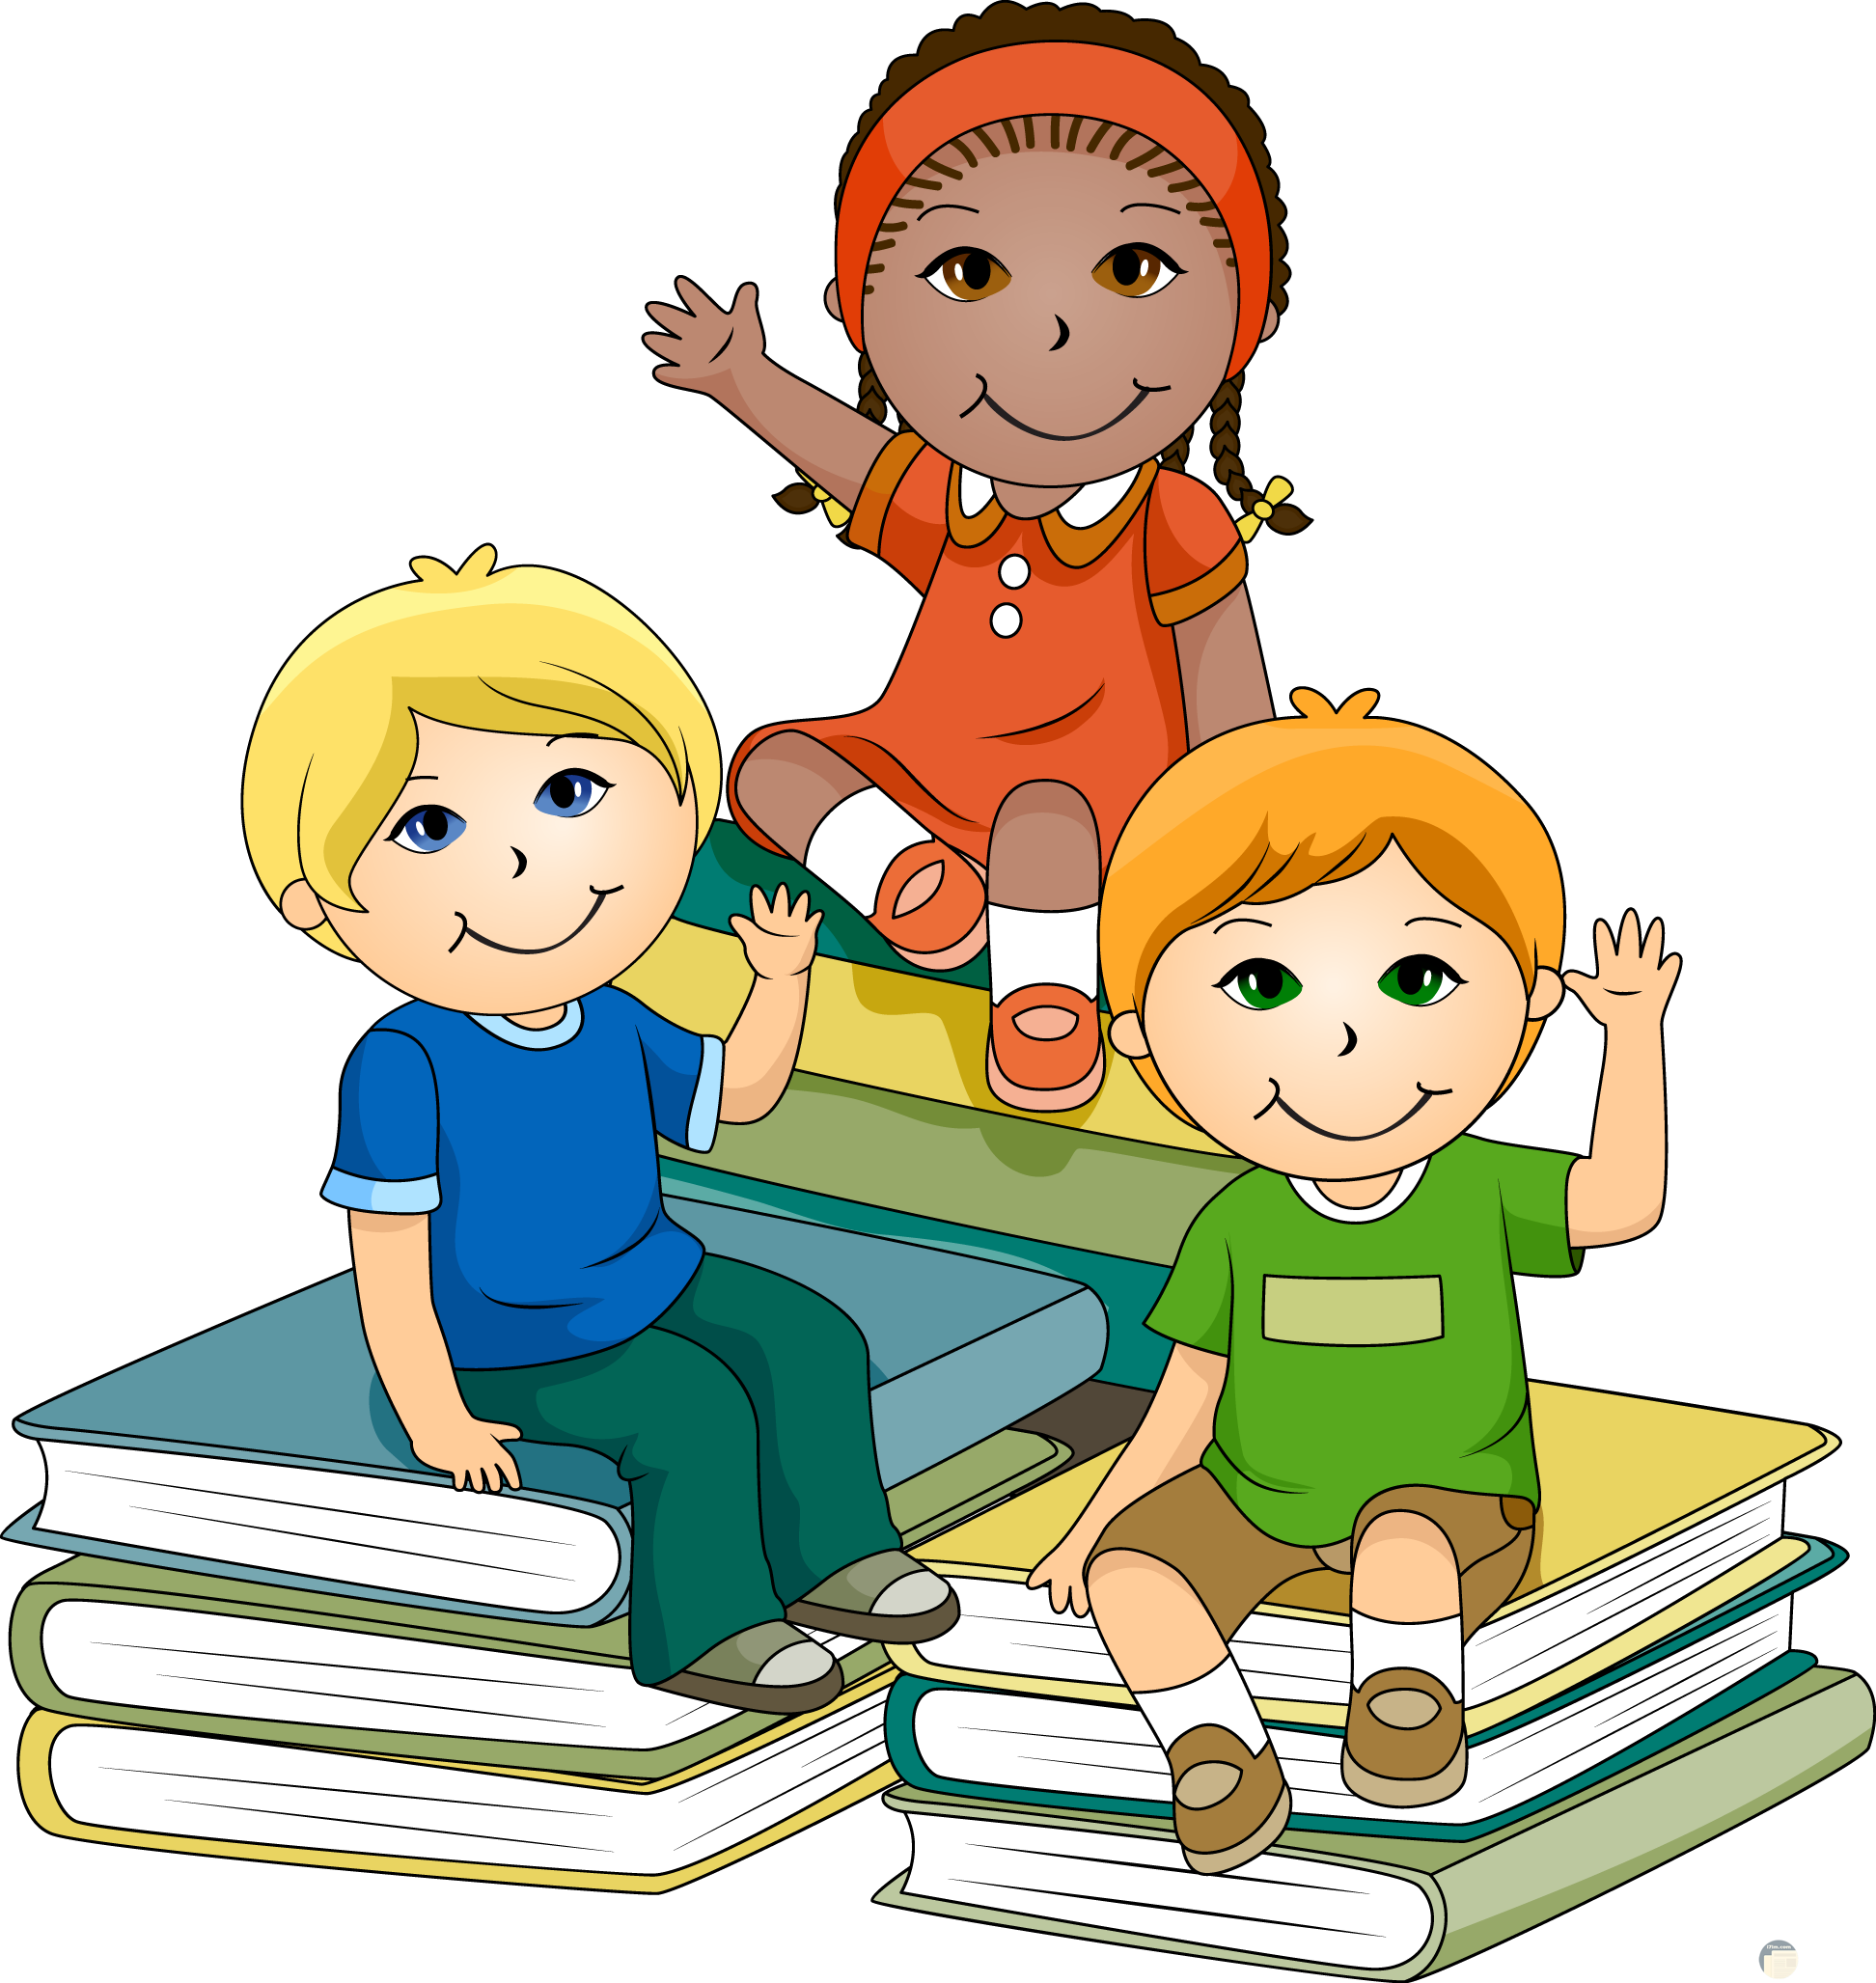 مجموعة من الاطفال بالكرتون يتصفخون الكتب